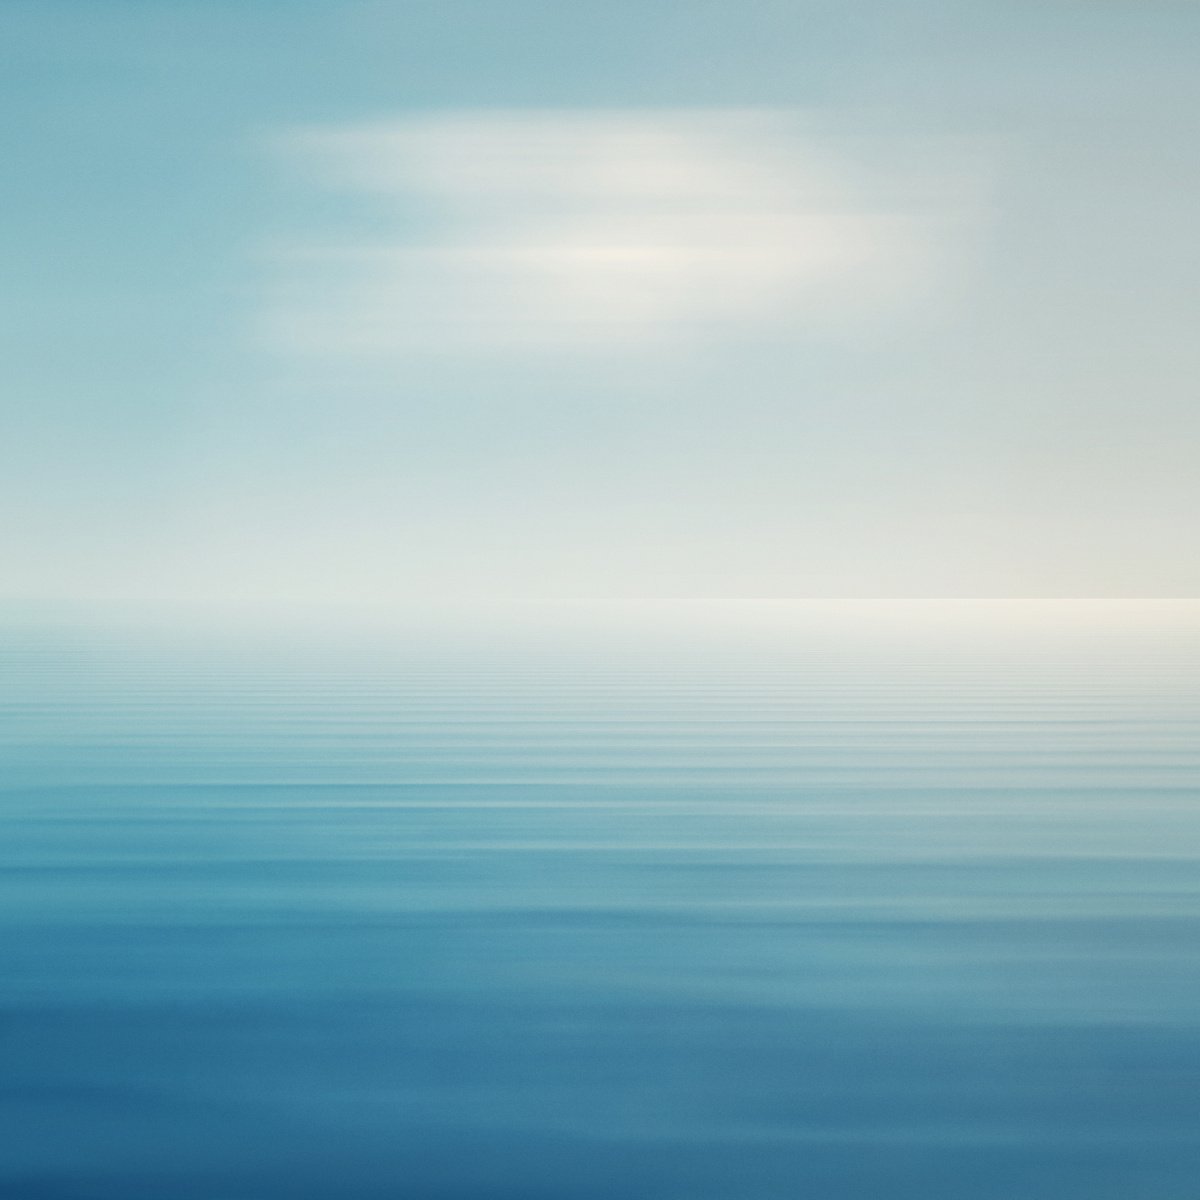 Calm Seascape - Limited Edition of 17 by Fabio Sozza